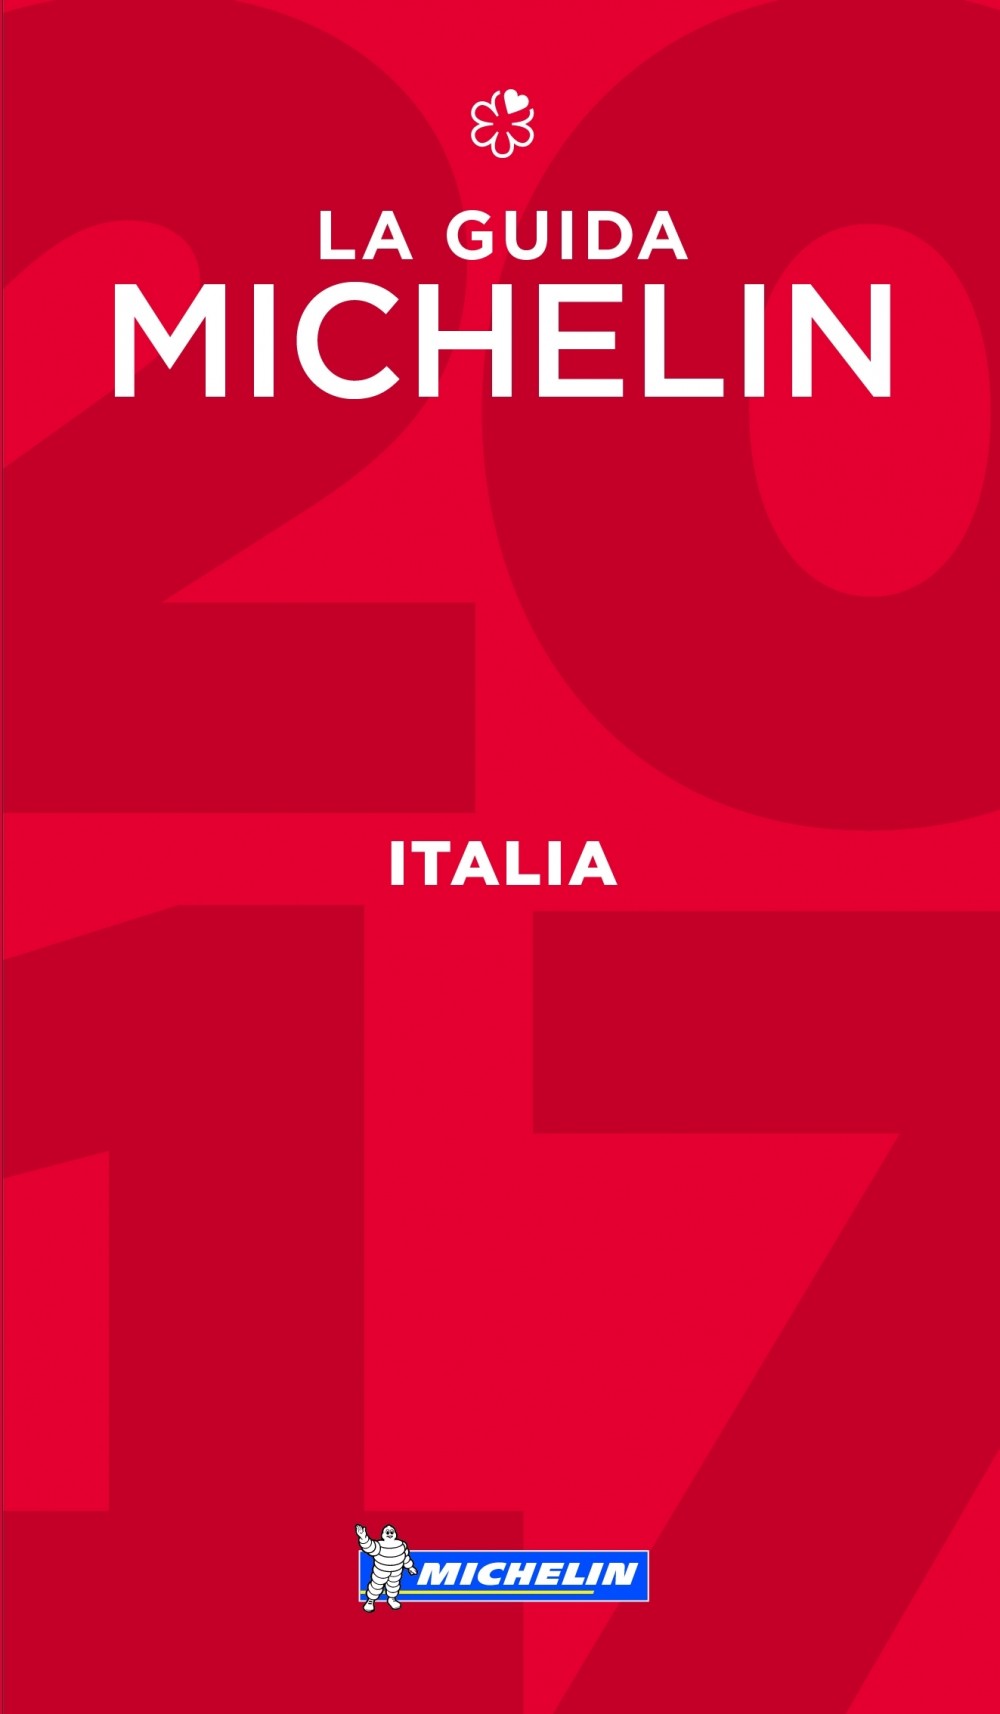 Roberto presenta la Guida Rossa Michelin 2017 al Regio di Parma - Roberto Rasia